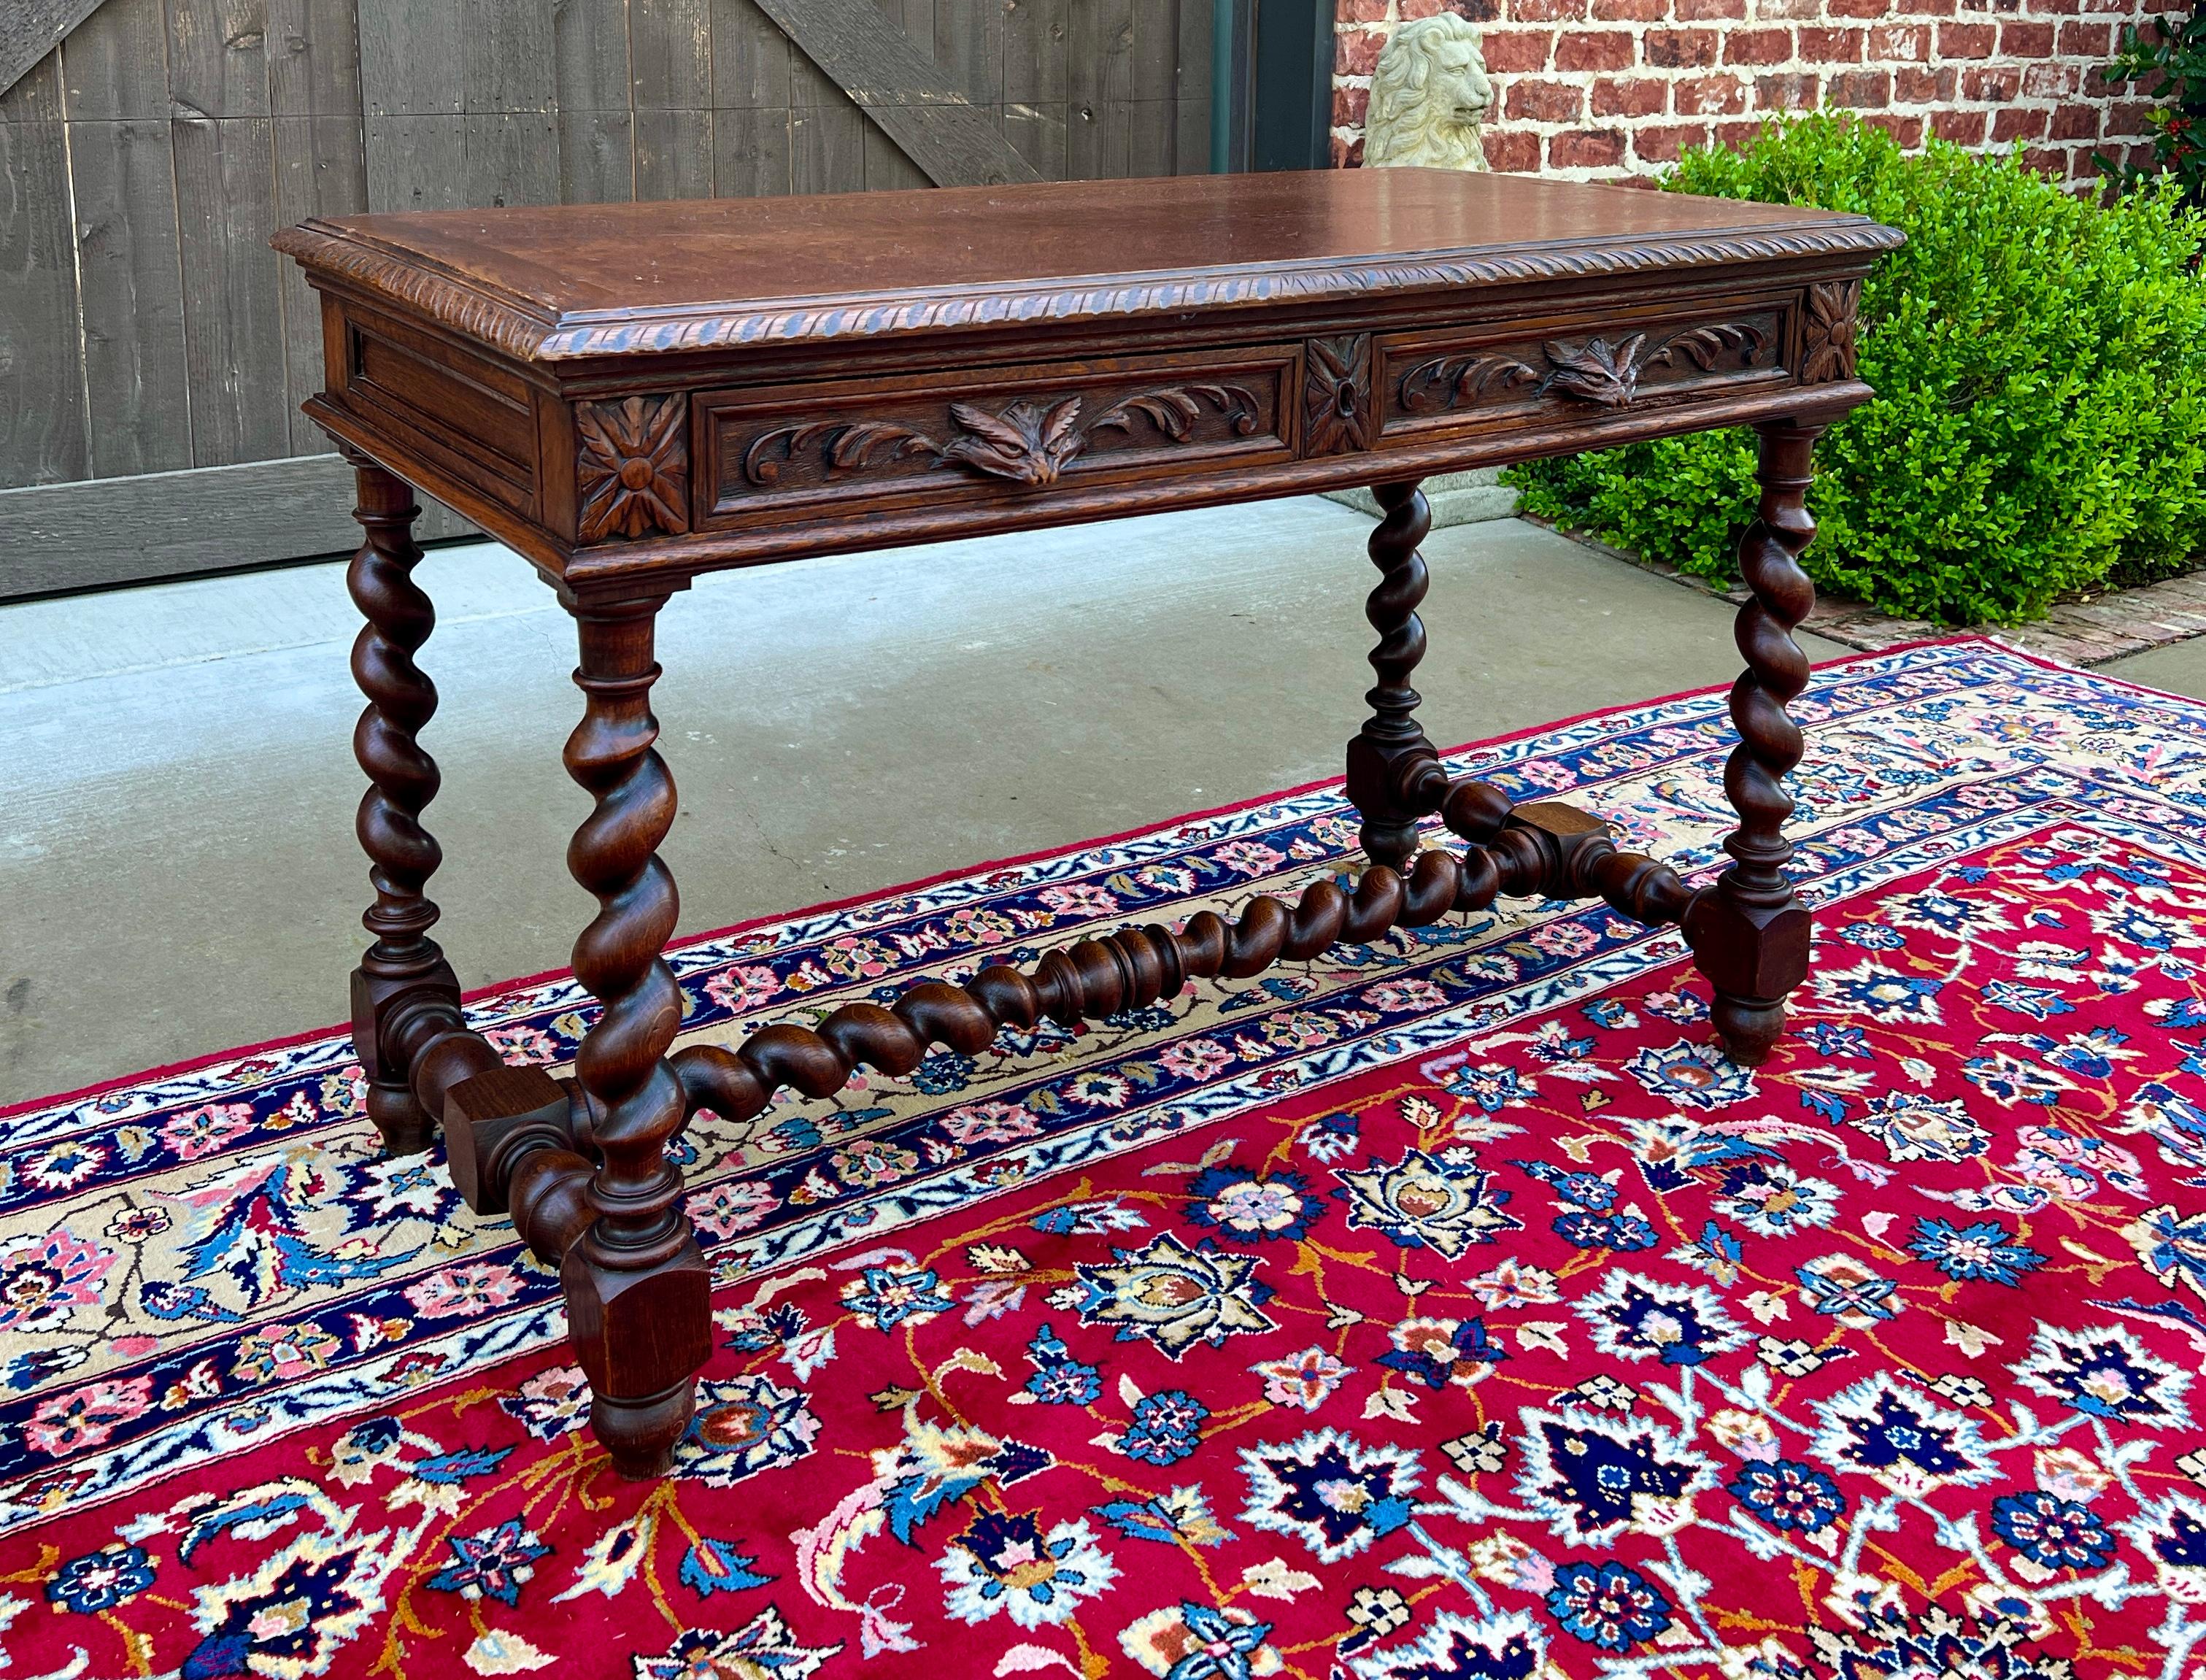 Antique French Desk Table Renaissance Revival Barley Twist Carved Tiger Oak 19C For Sale 8